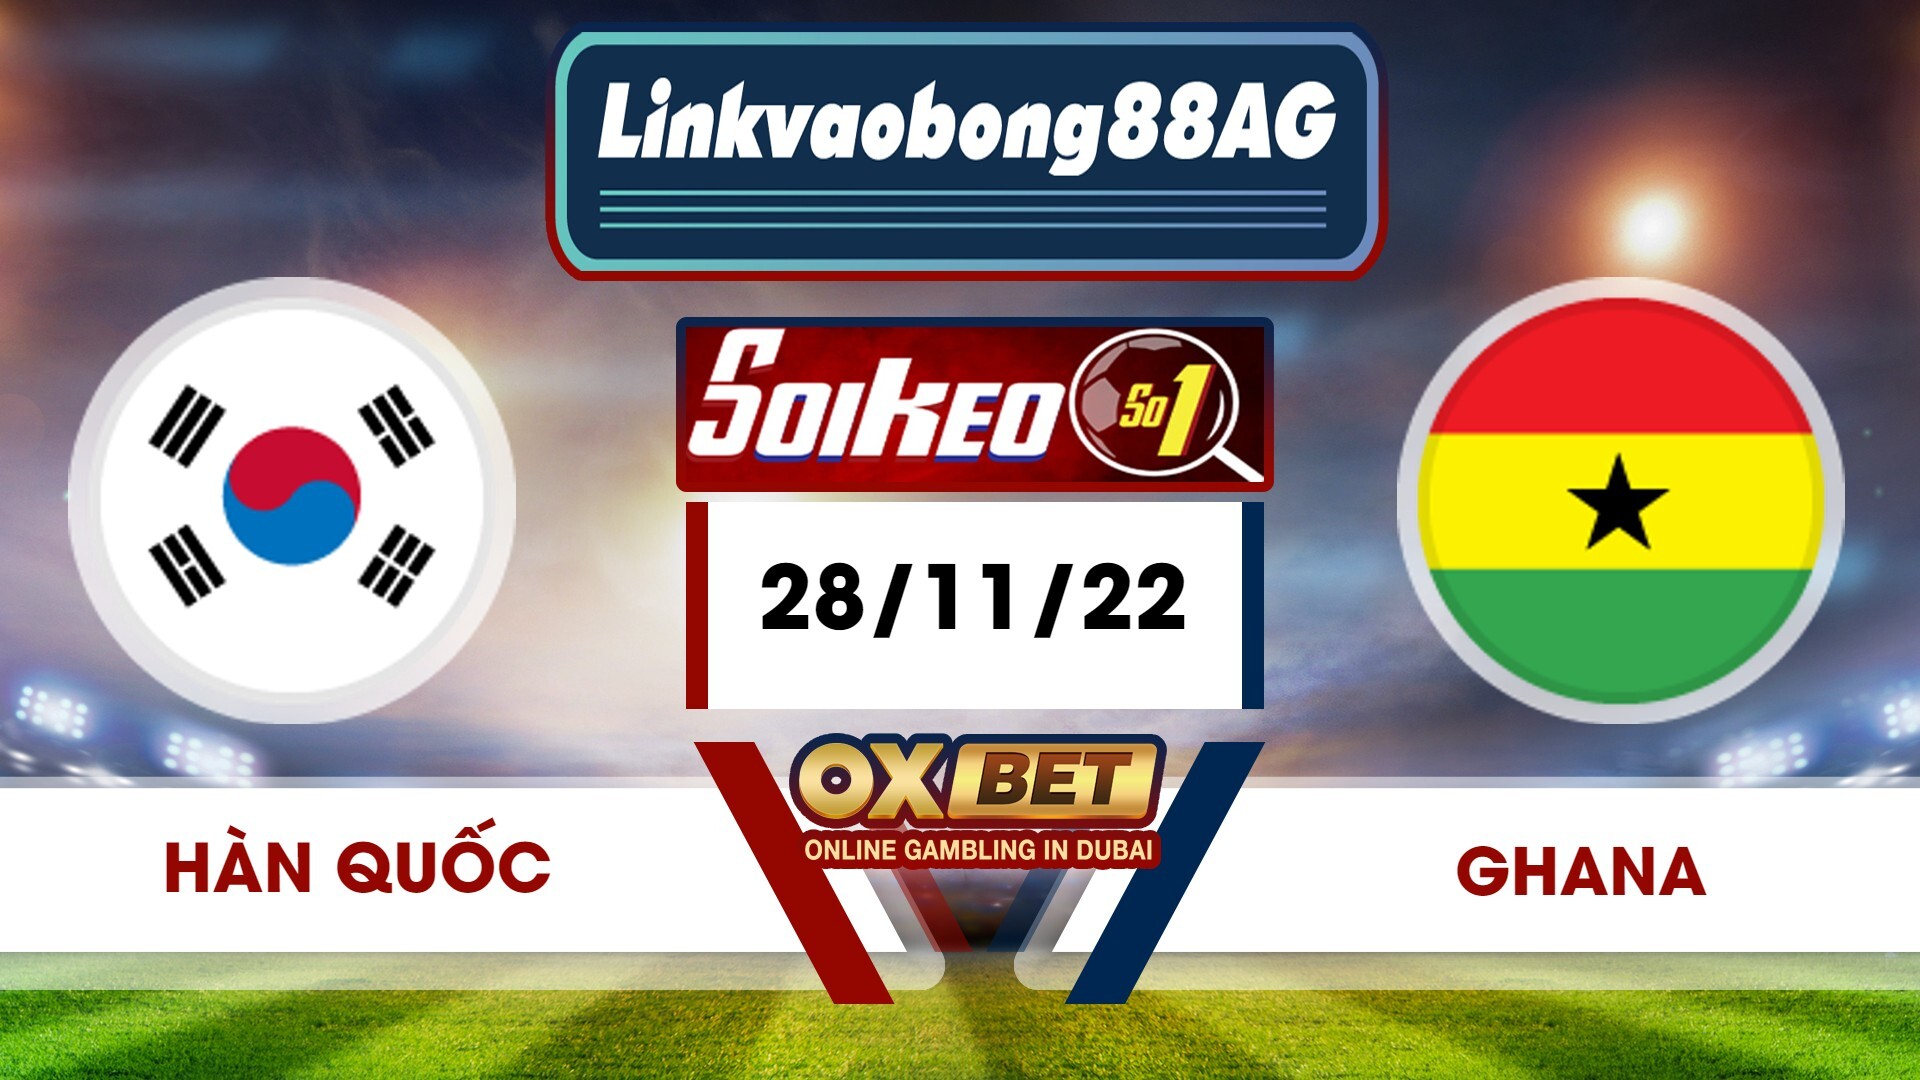 Soi kèo Bong88 Hàn Quốc vs Ghana – 28/11/2022 – 20h00 tối